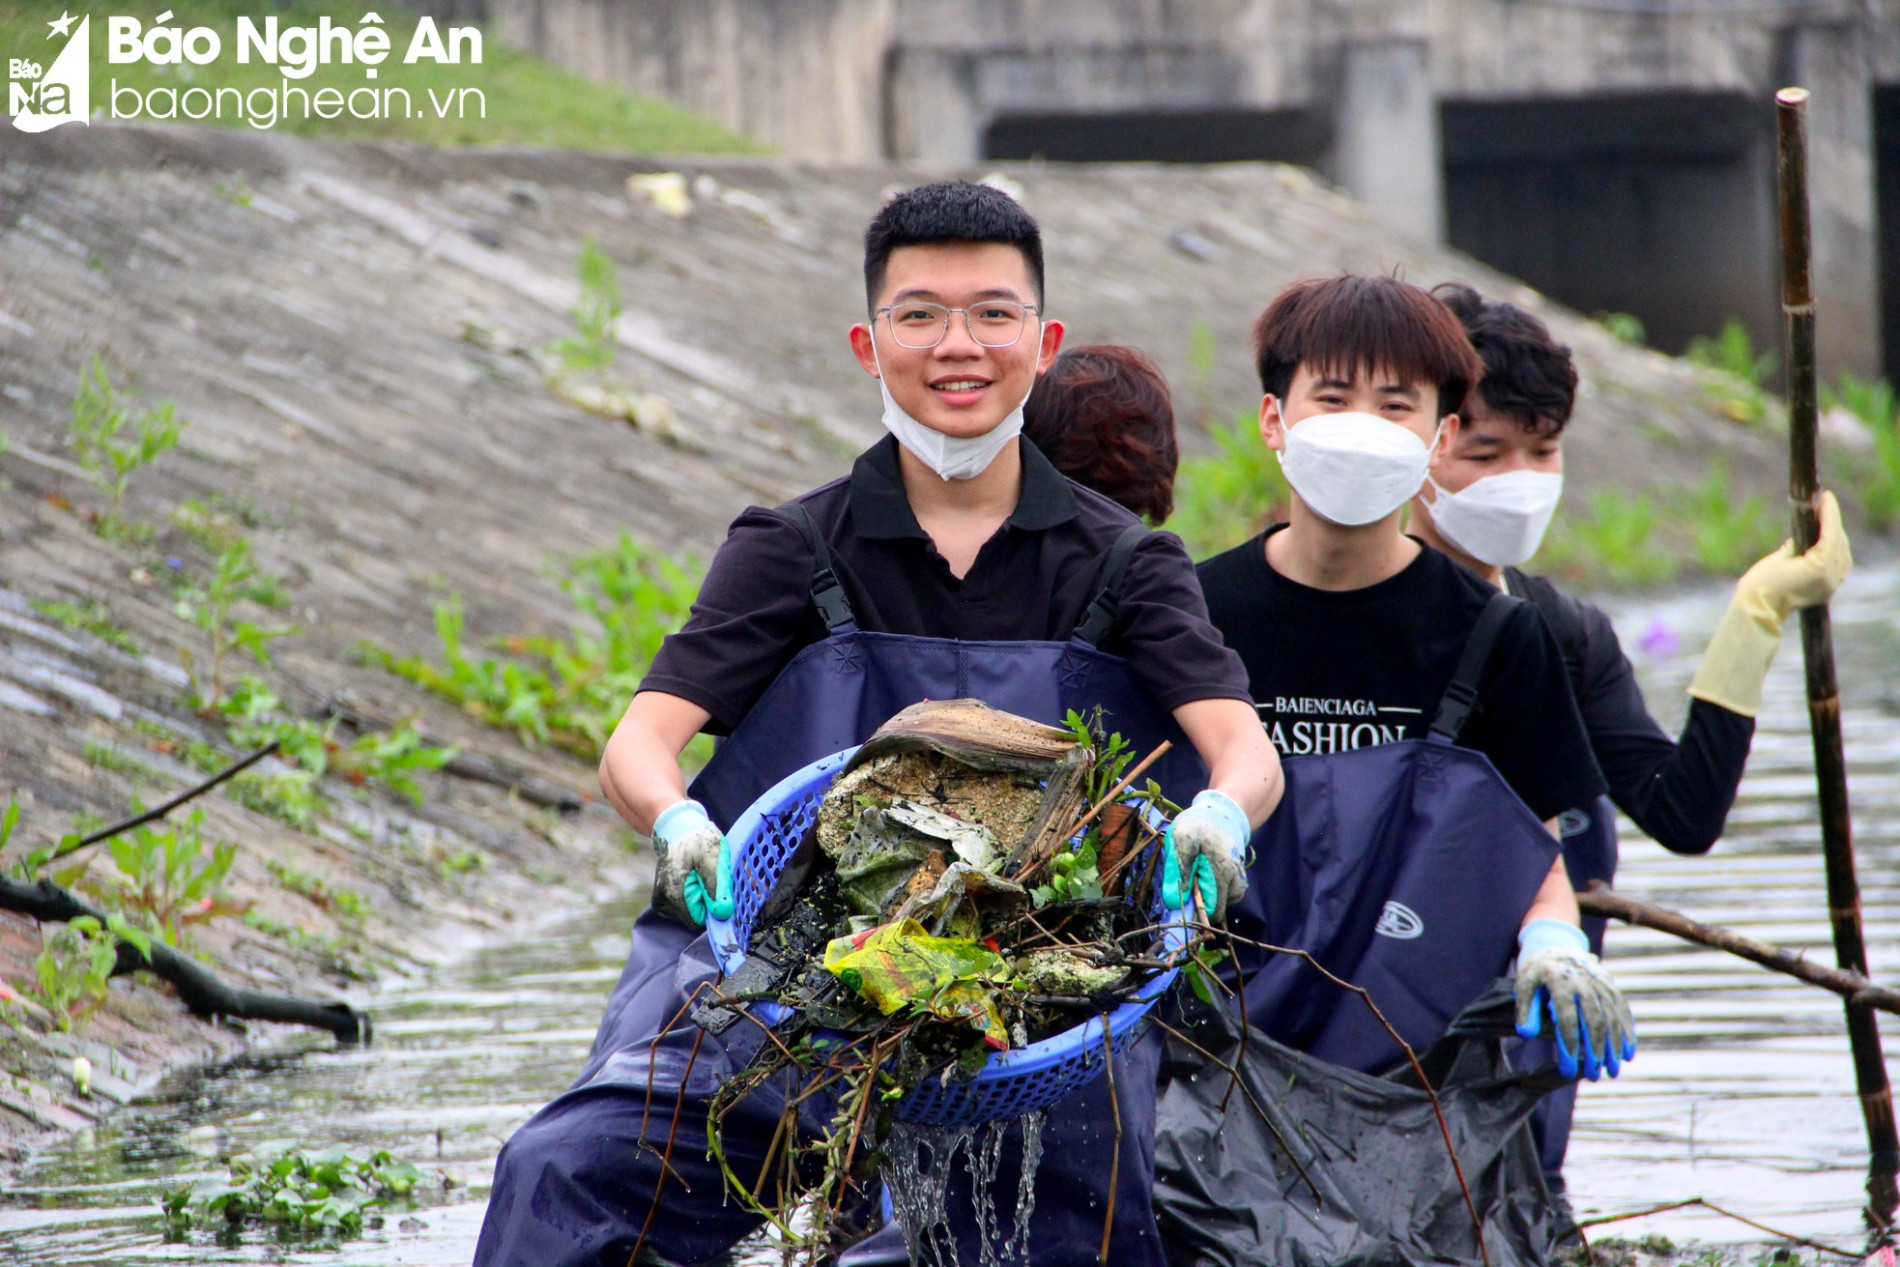 Nghệ An Xanh - Nhóm bạn trẻ gen Z tình nguyện dọn rác, làm sạch môi trường ảnh 7